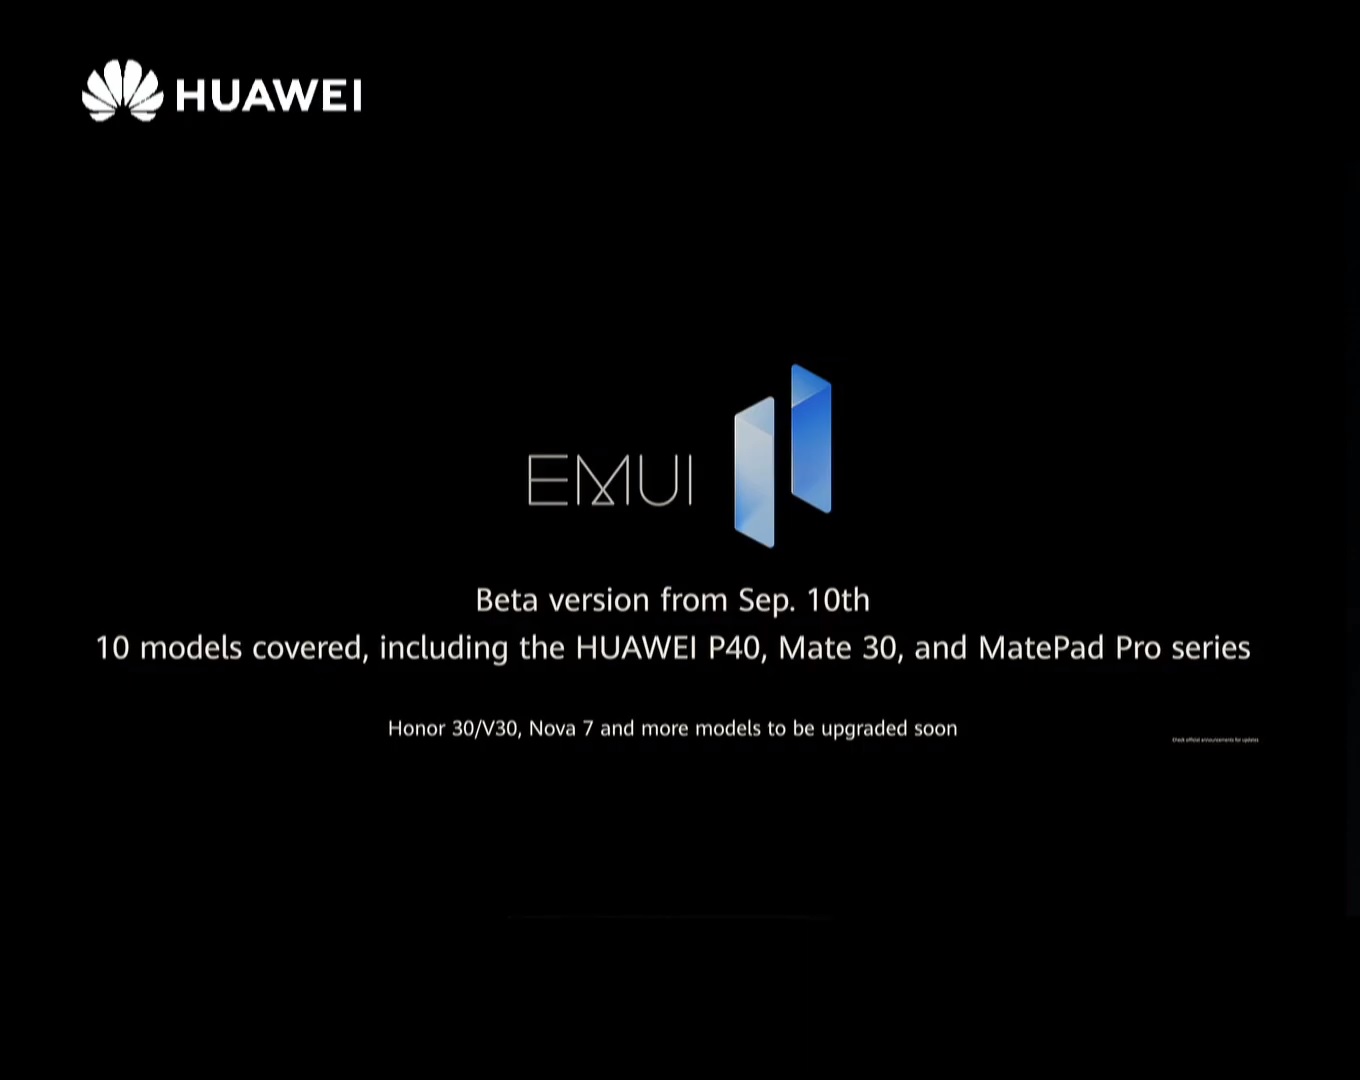 Huawei EMUI 11 beta